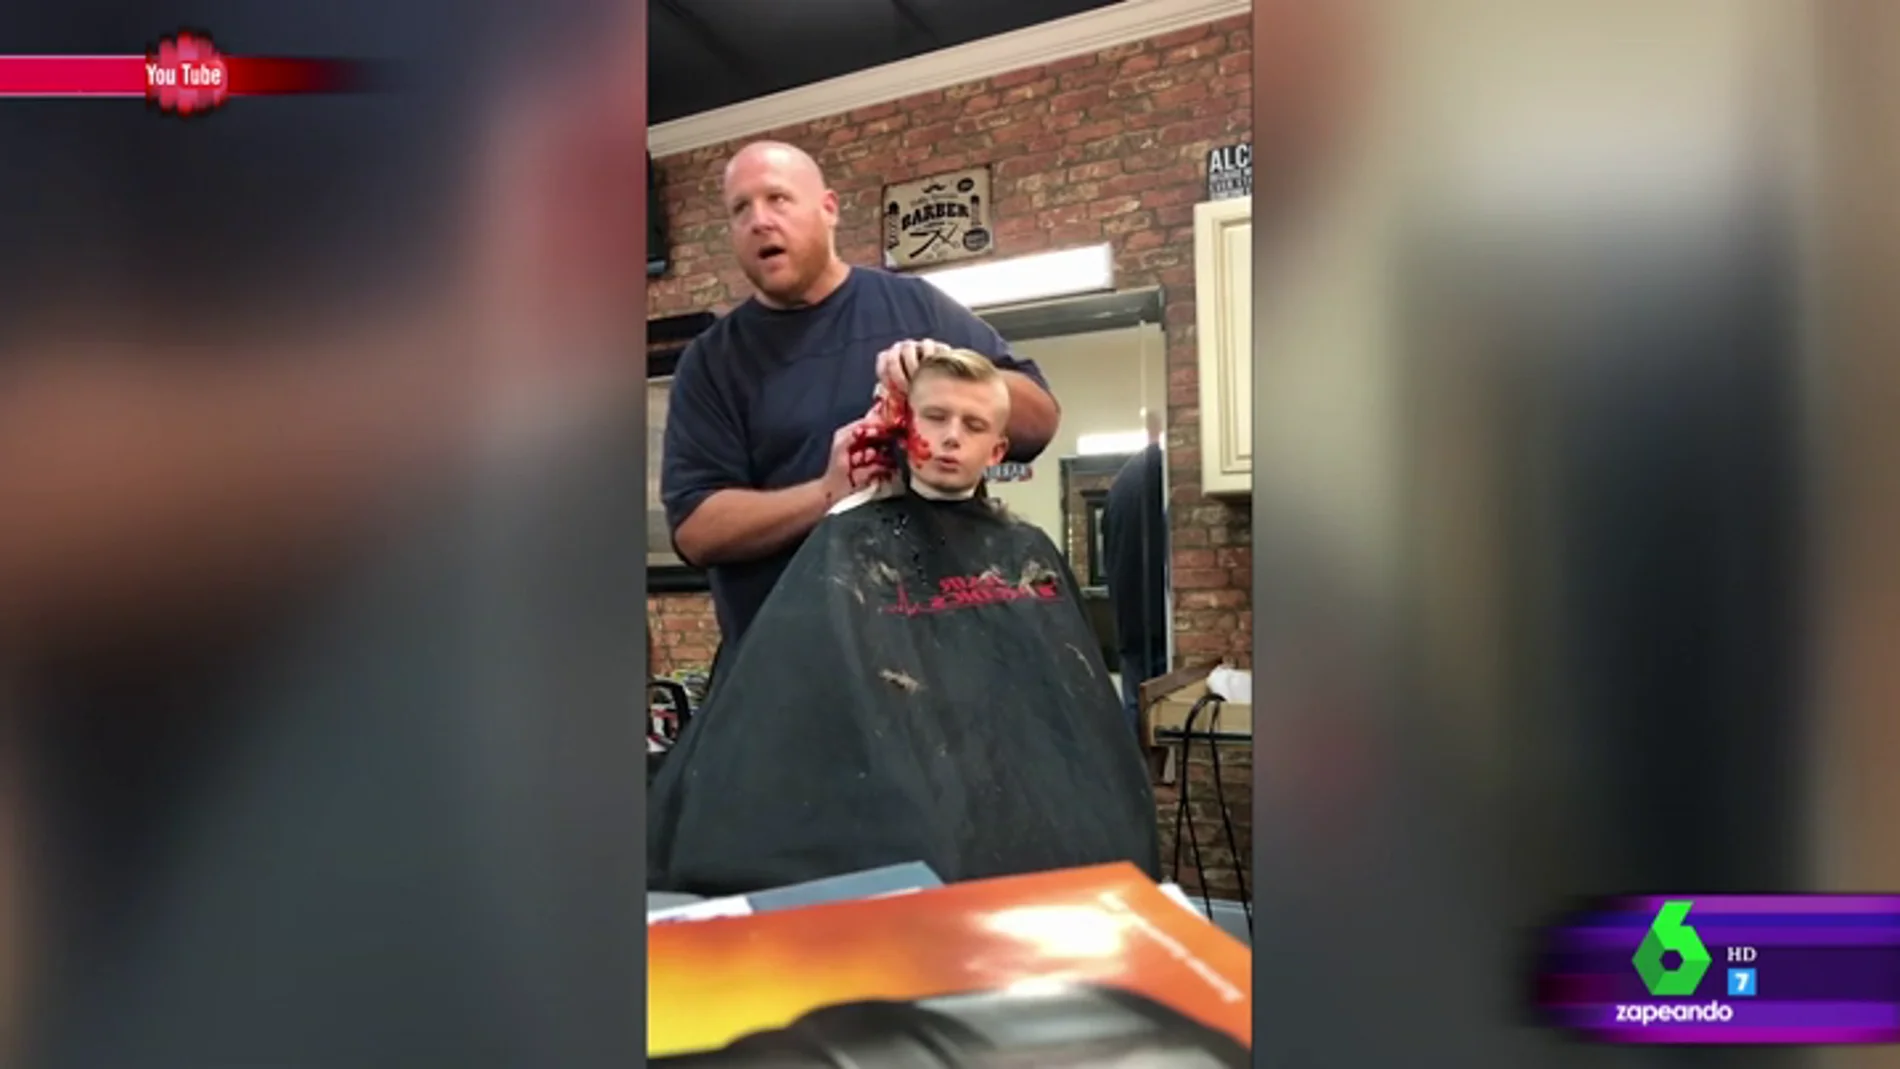 La divertida broma de un padre a su hijo mientras le corta el pelo: "Ese chaval no va a volver a gastar una broma en su vida"